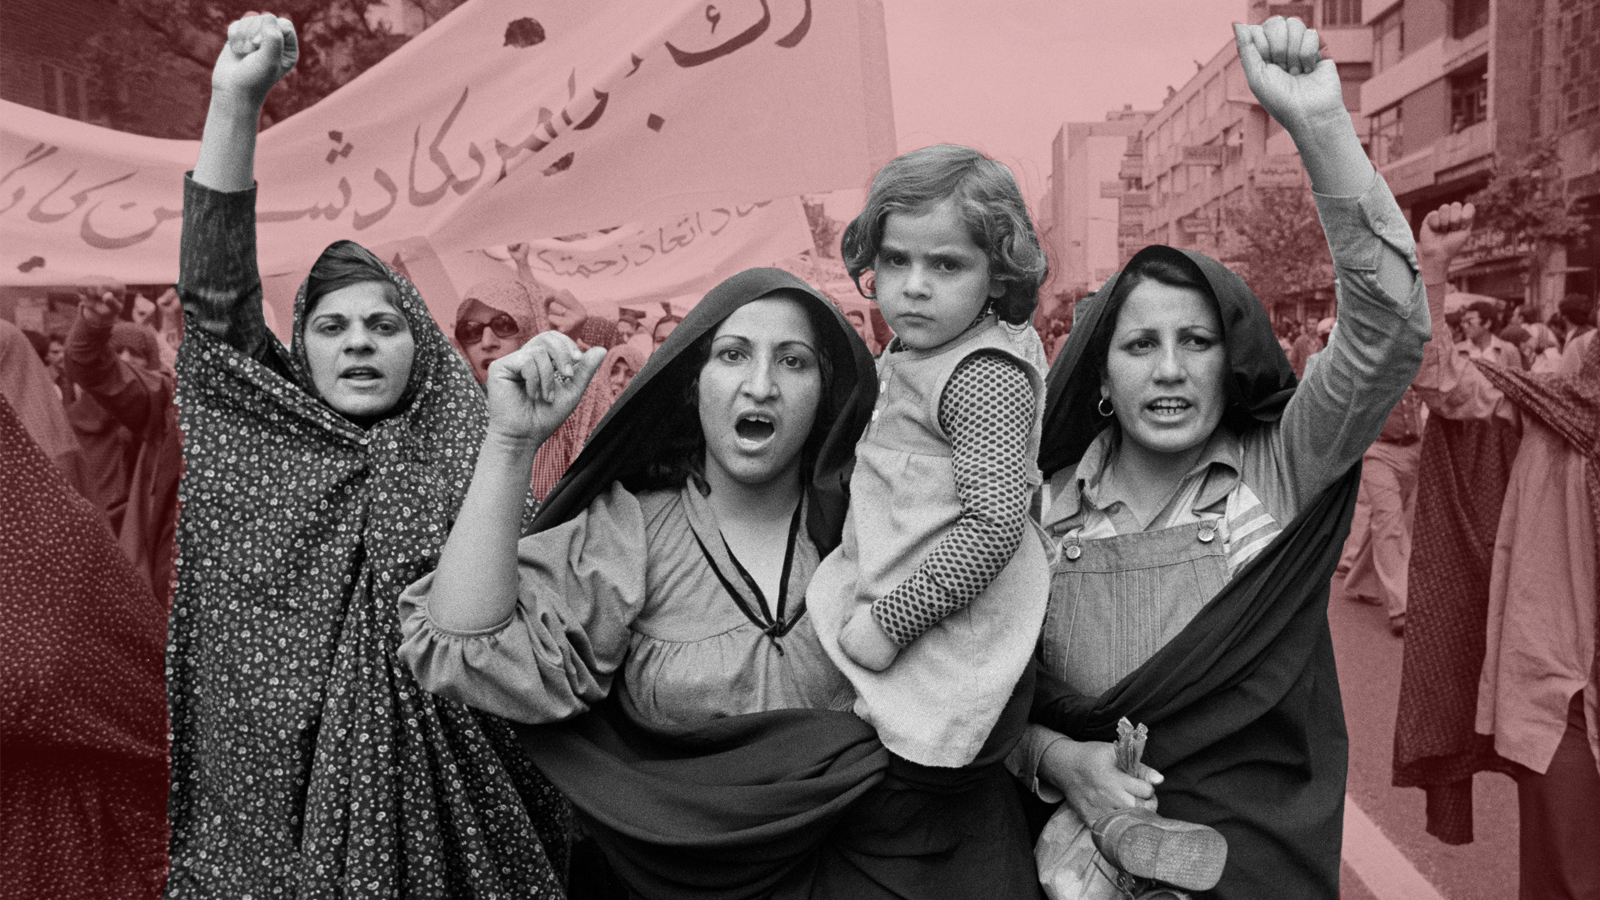 ヒジャブを手に自由を叫ぶイラン人女性たち